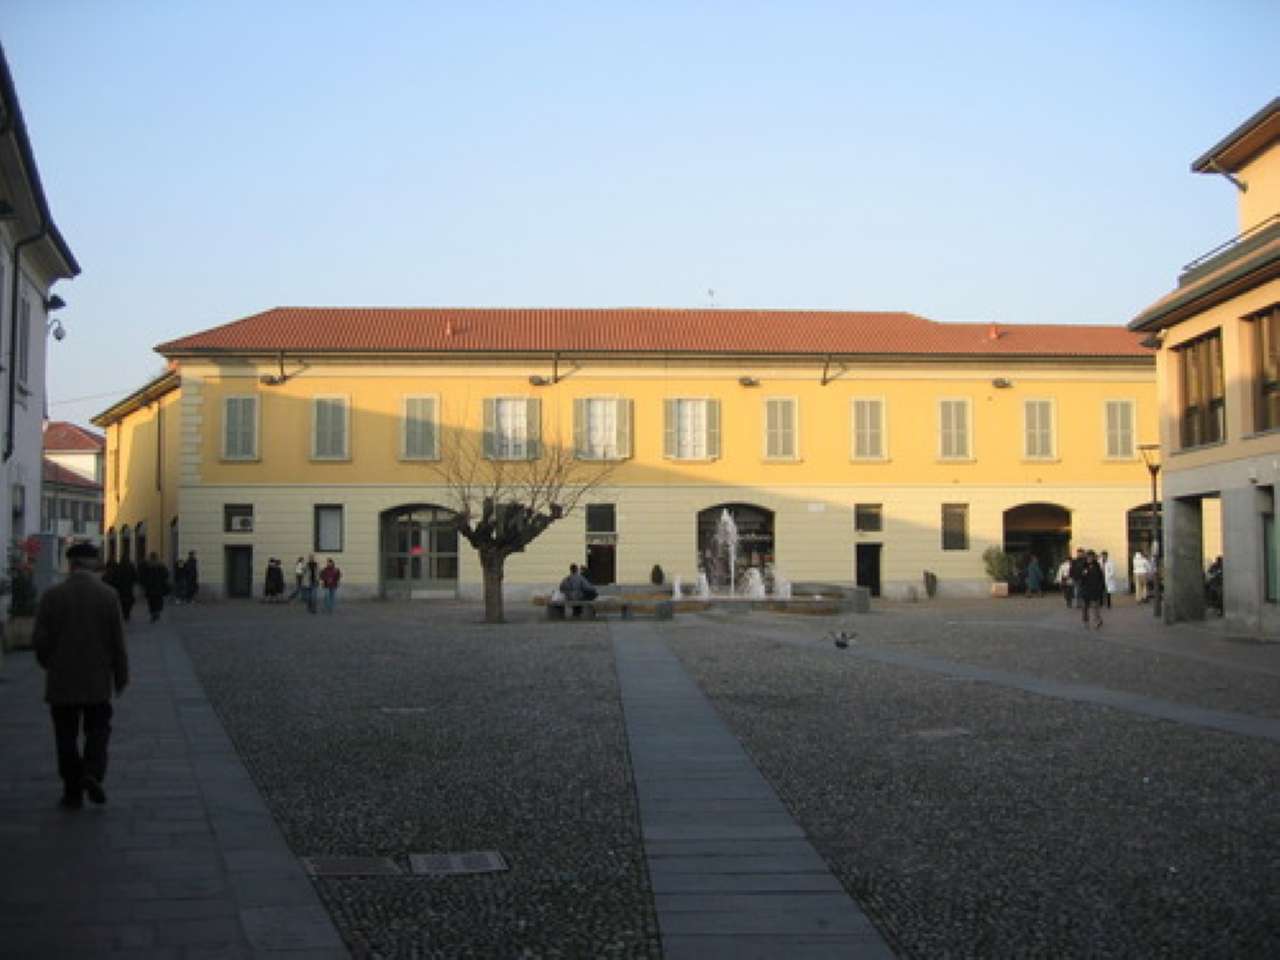 Stabile Intero - Palazzo, 0, Vendita - Cernusco Sul Naviglio